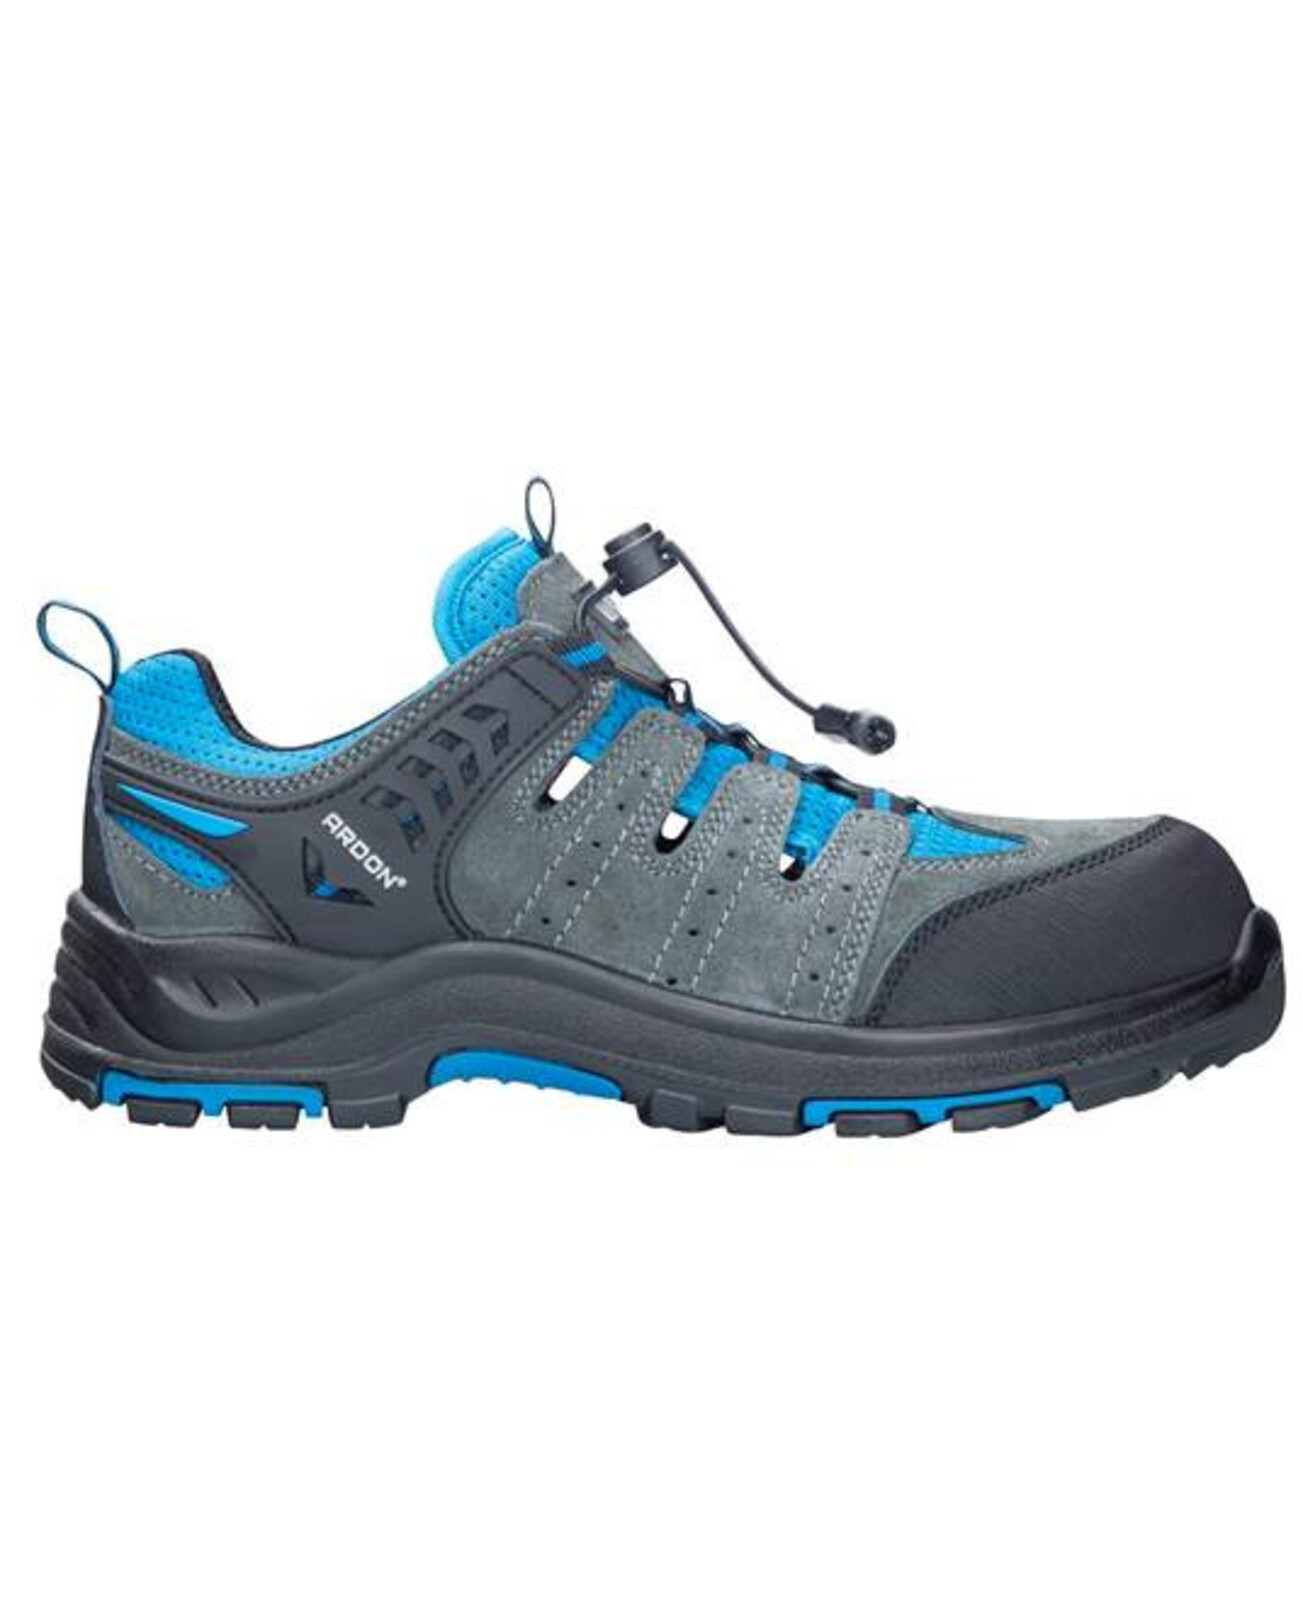 Bezpečnostná obuv ARDON®TRIMMER S1P  - veľkosť: 42, farba: sivá/modrá